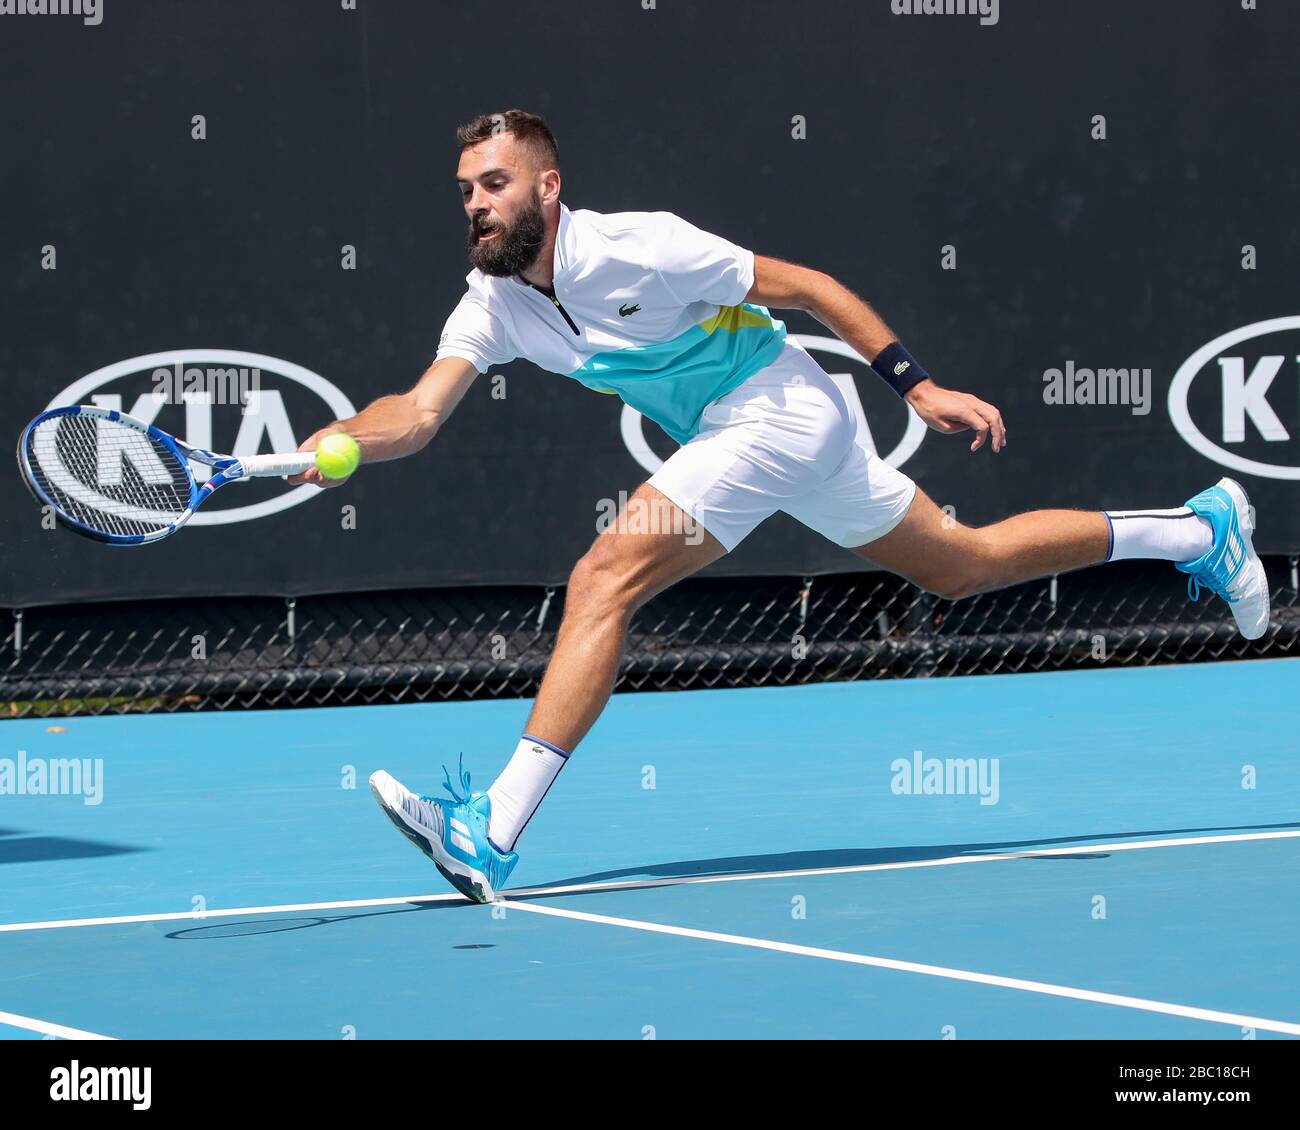 Der französische Tennisspieler Benoit Paire, der Voranschuss im Australian  Open 2020 Tennis Tournament, Melbourne Park, Melbourne, Victoria, Australien  spielt Stockfotografie - Alamy